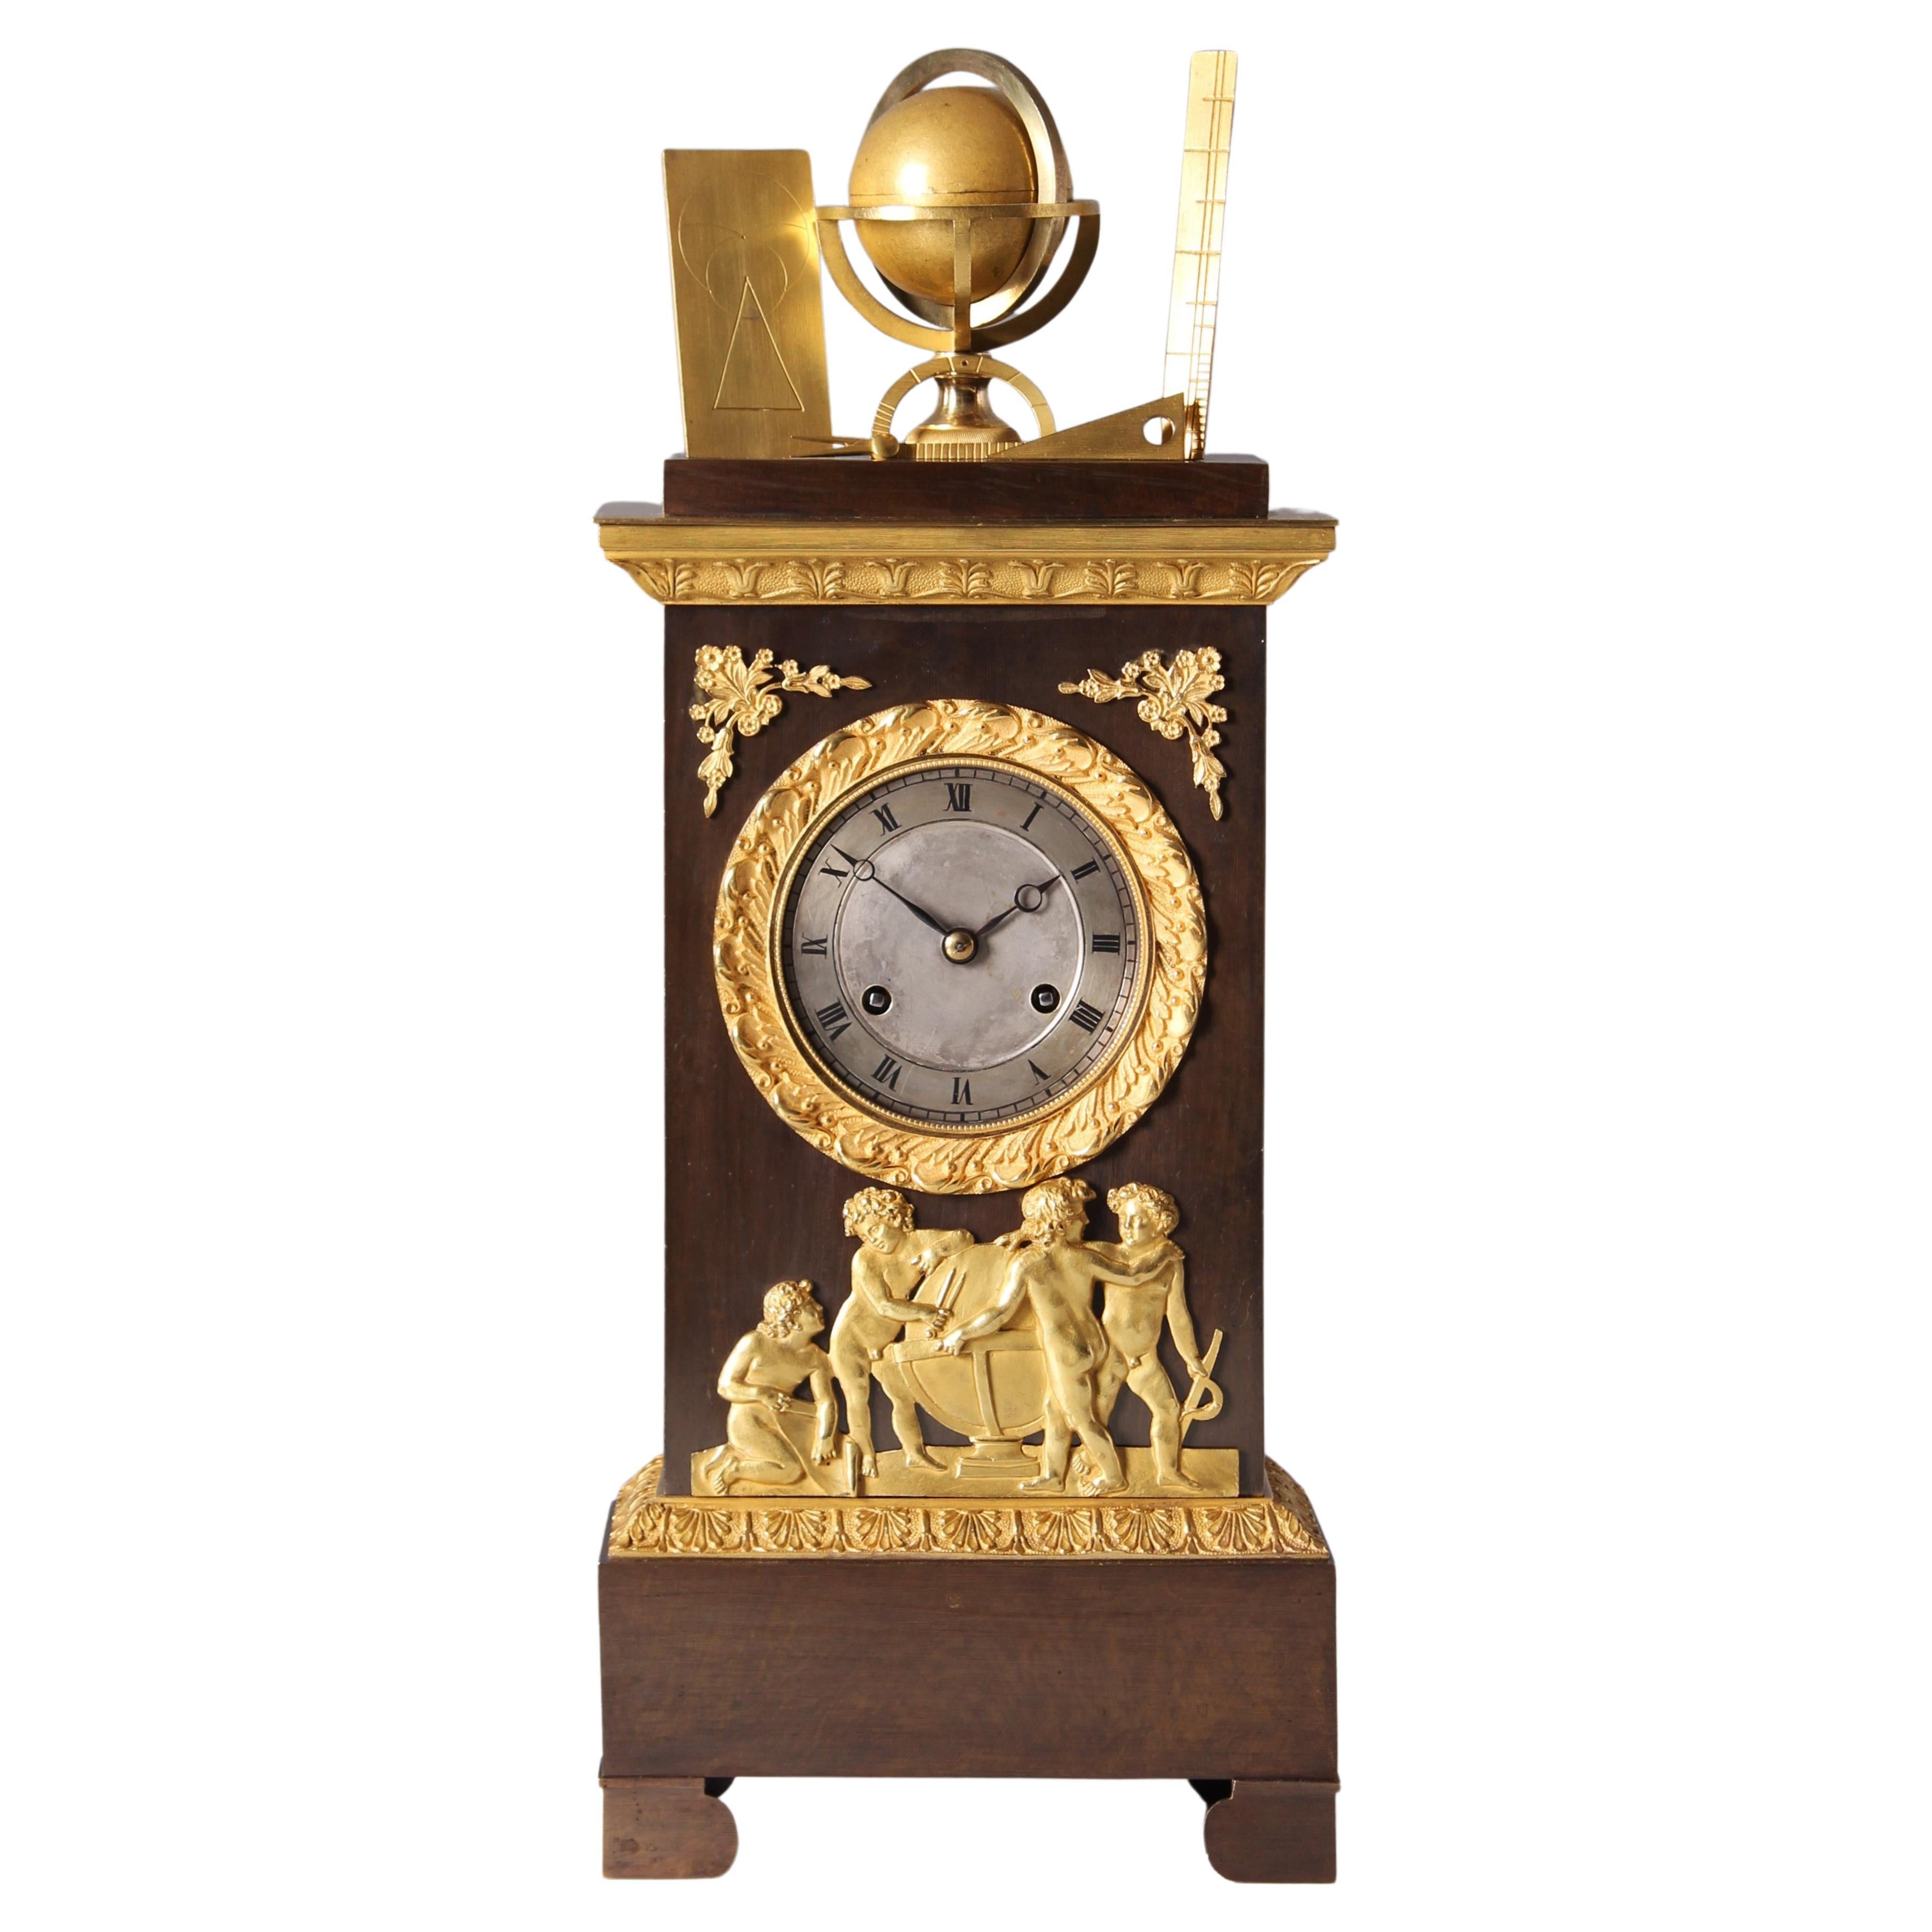 Horloge de cheminée du XIXe siècle "Astronomie", France vers 1830